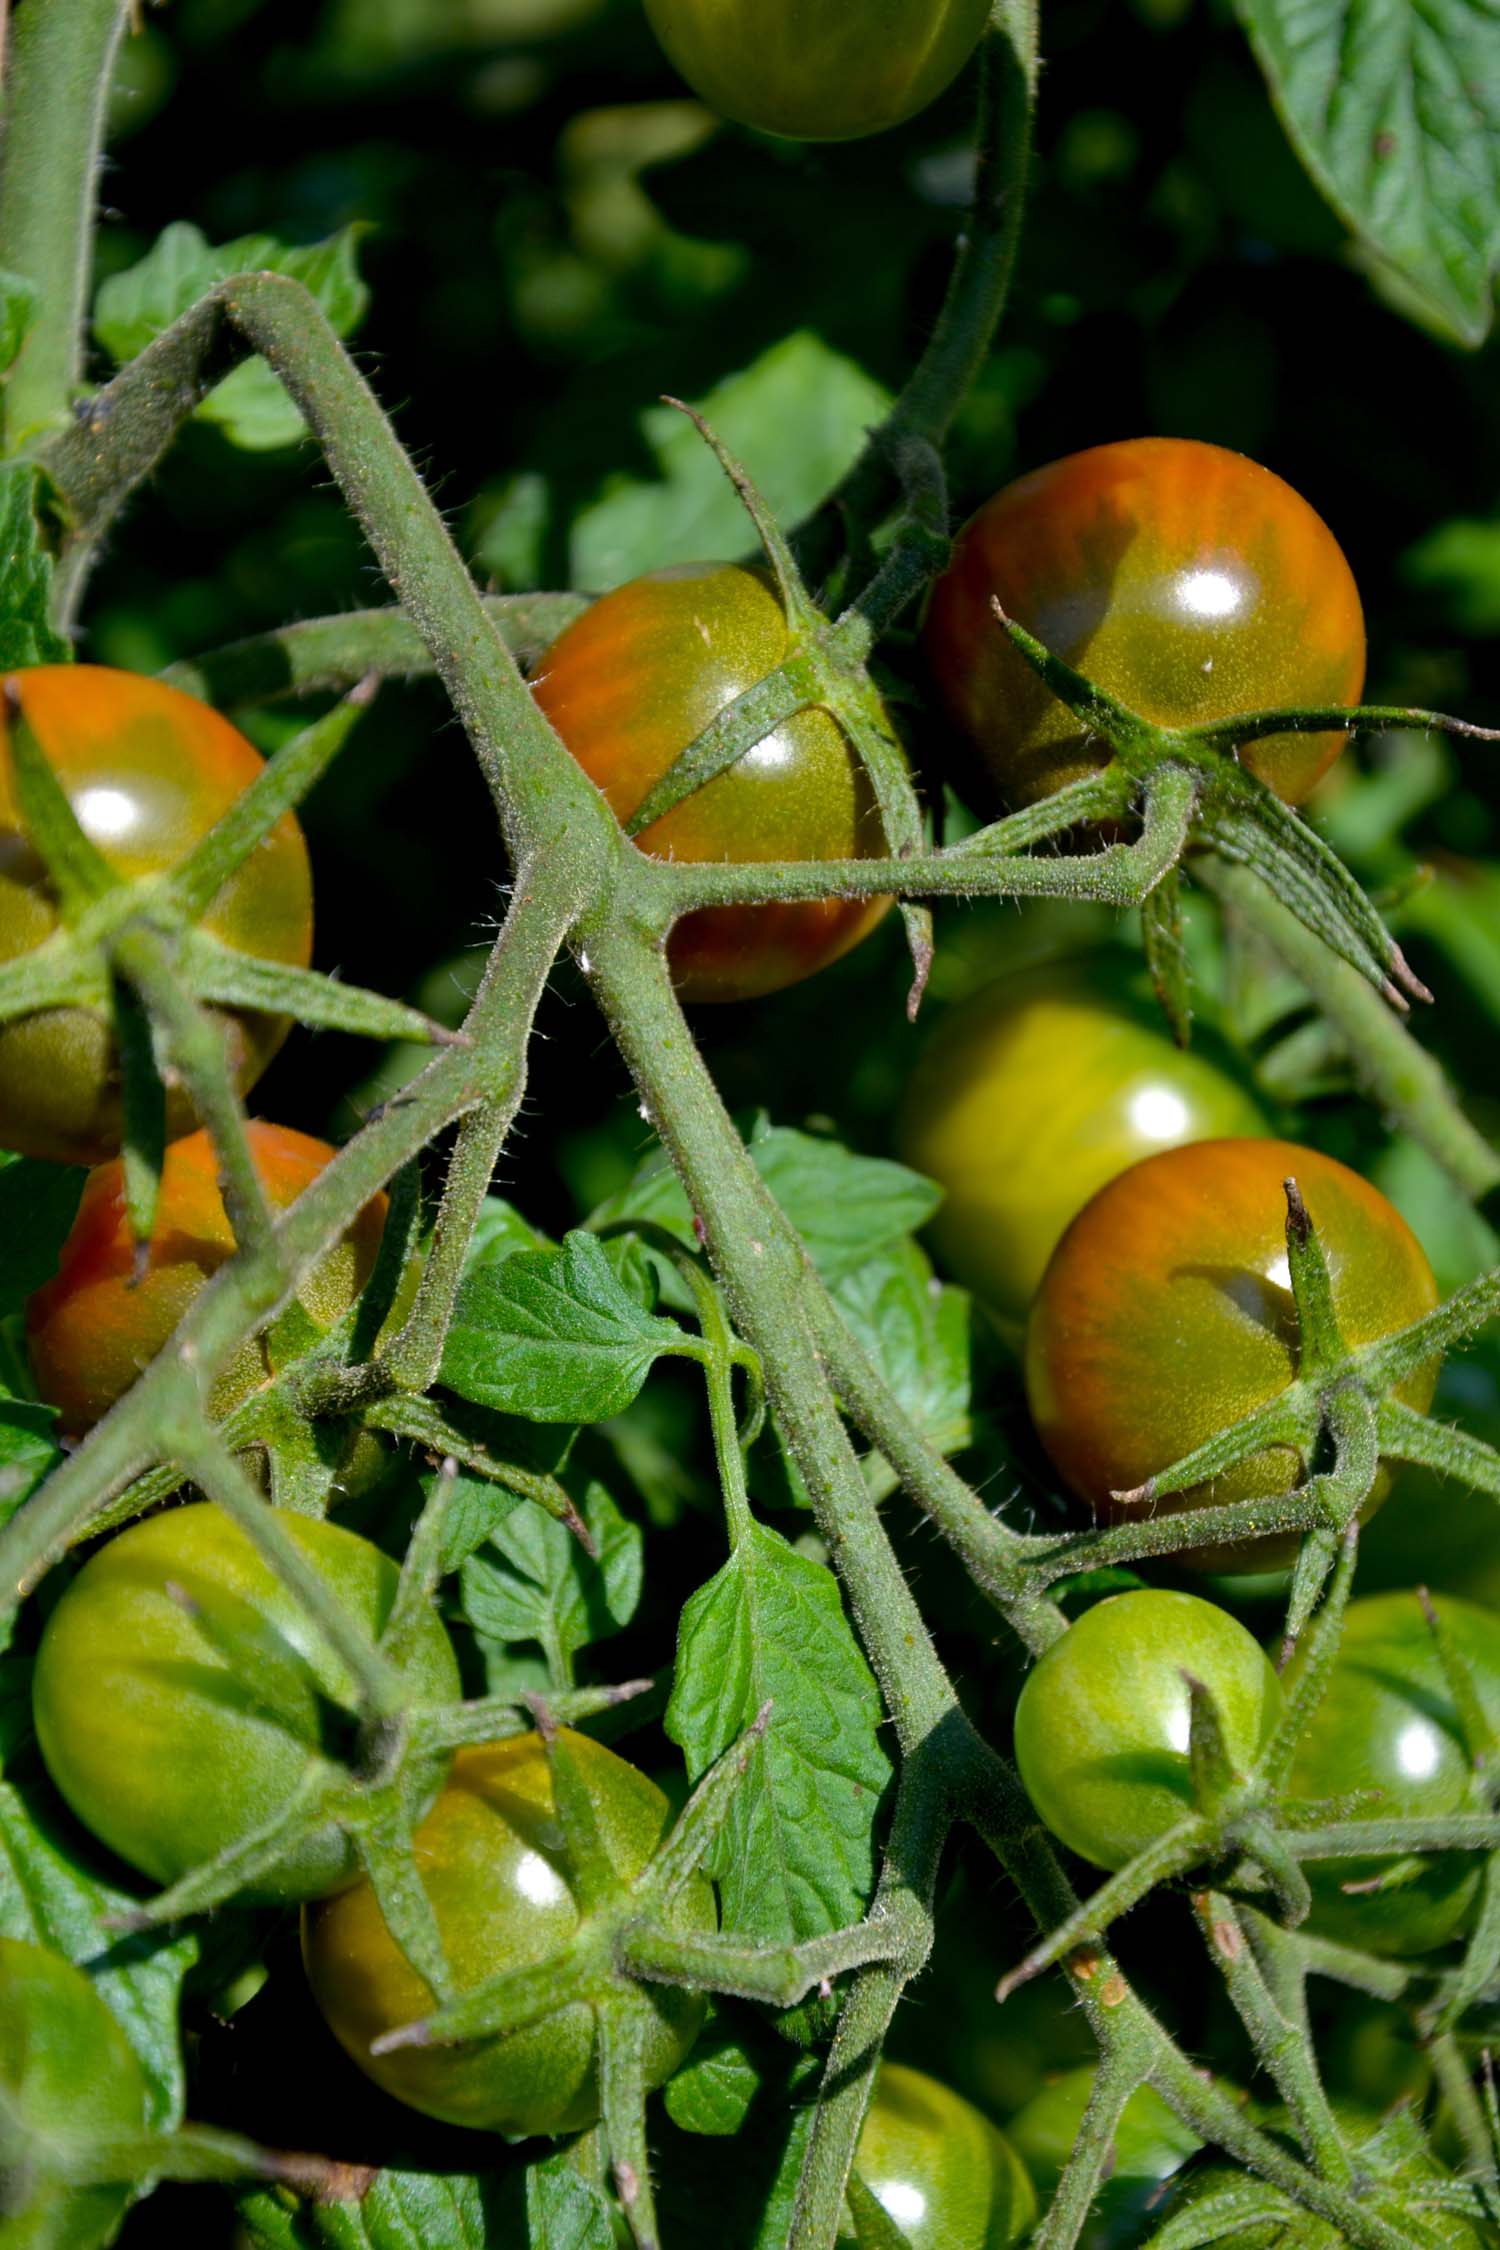 Les tomates cerises